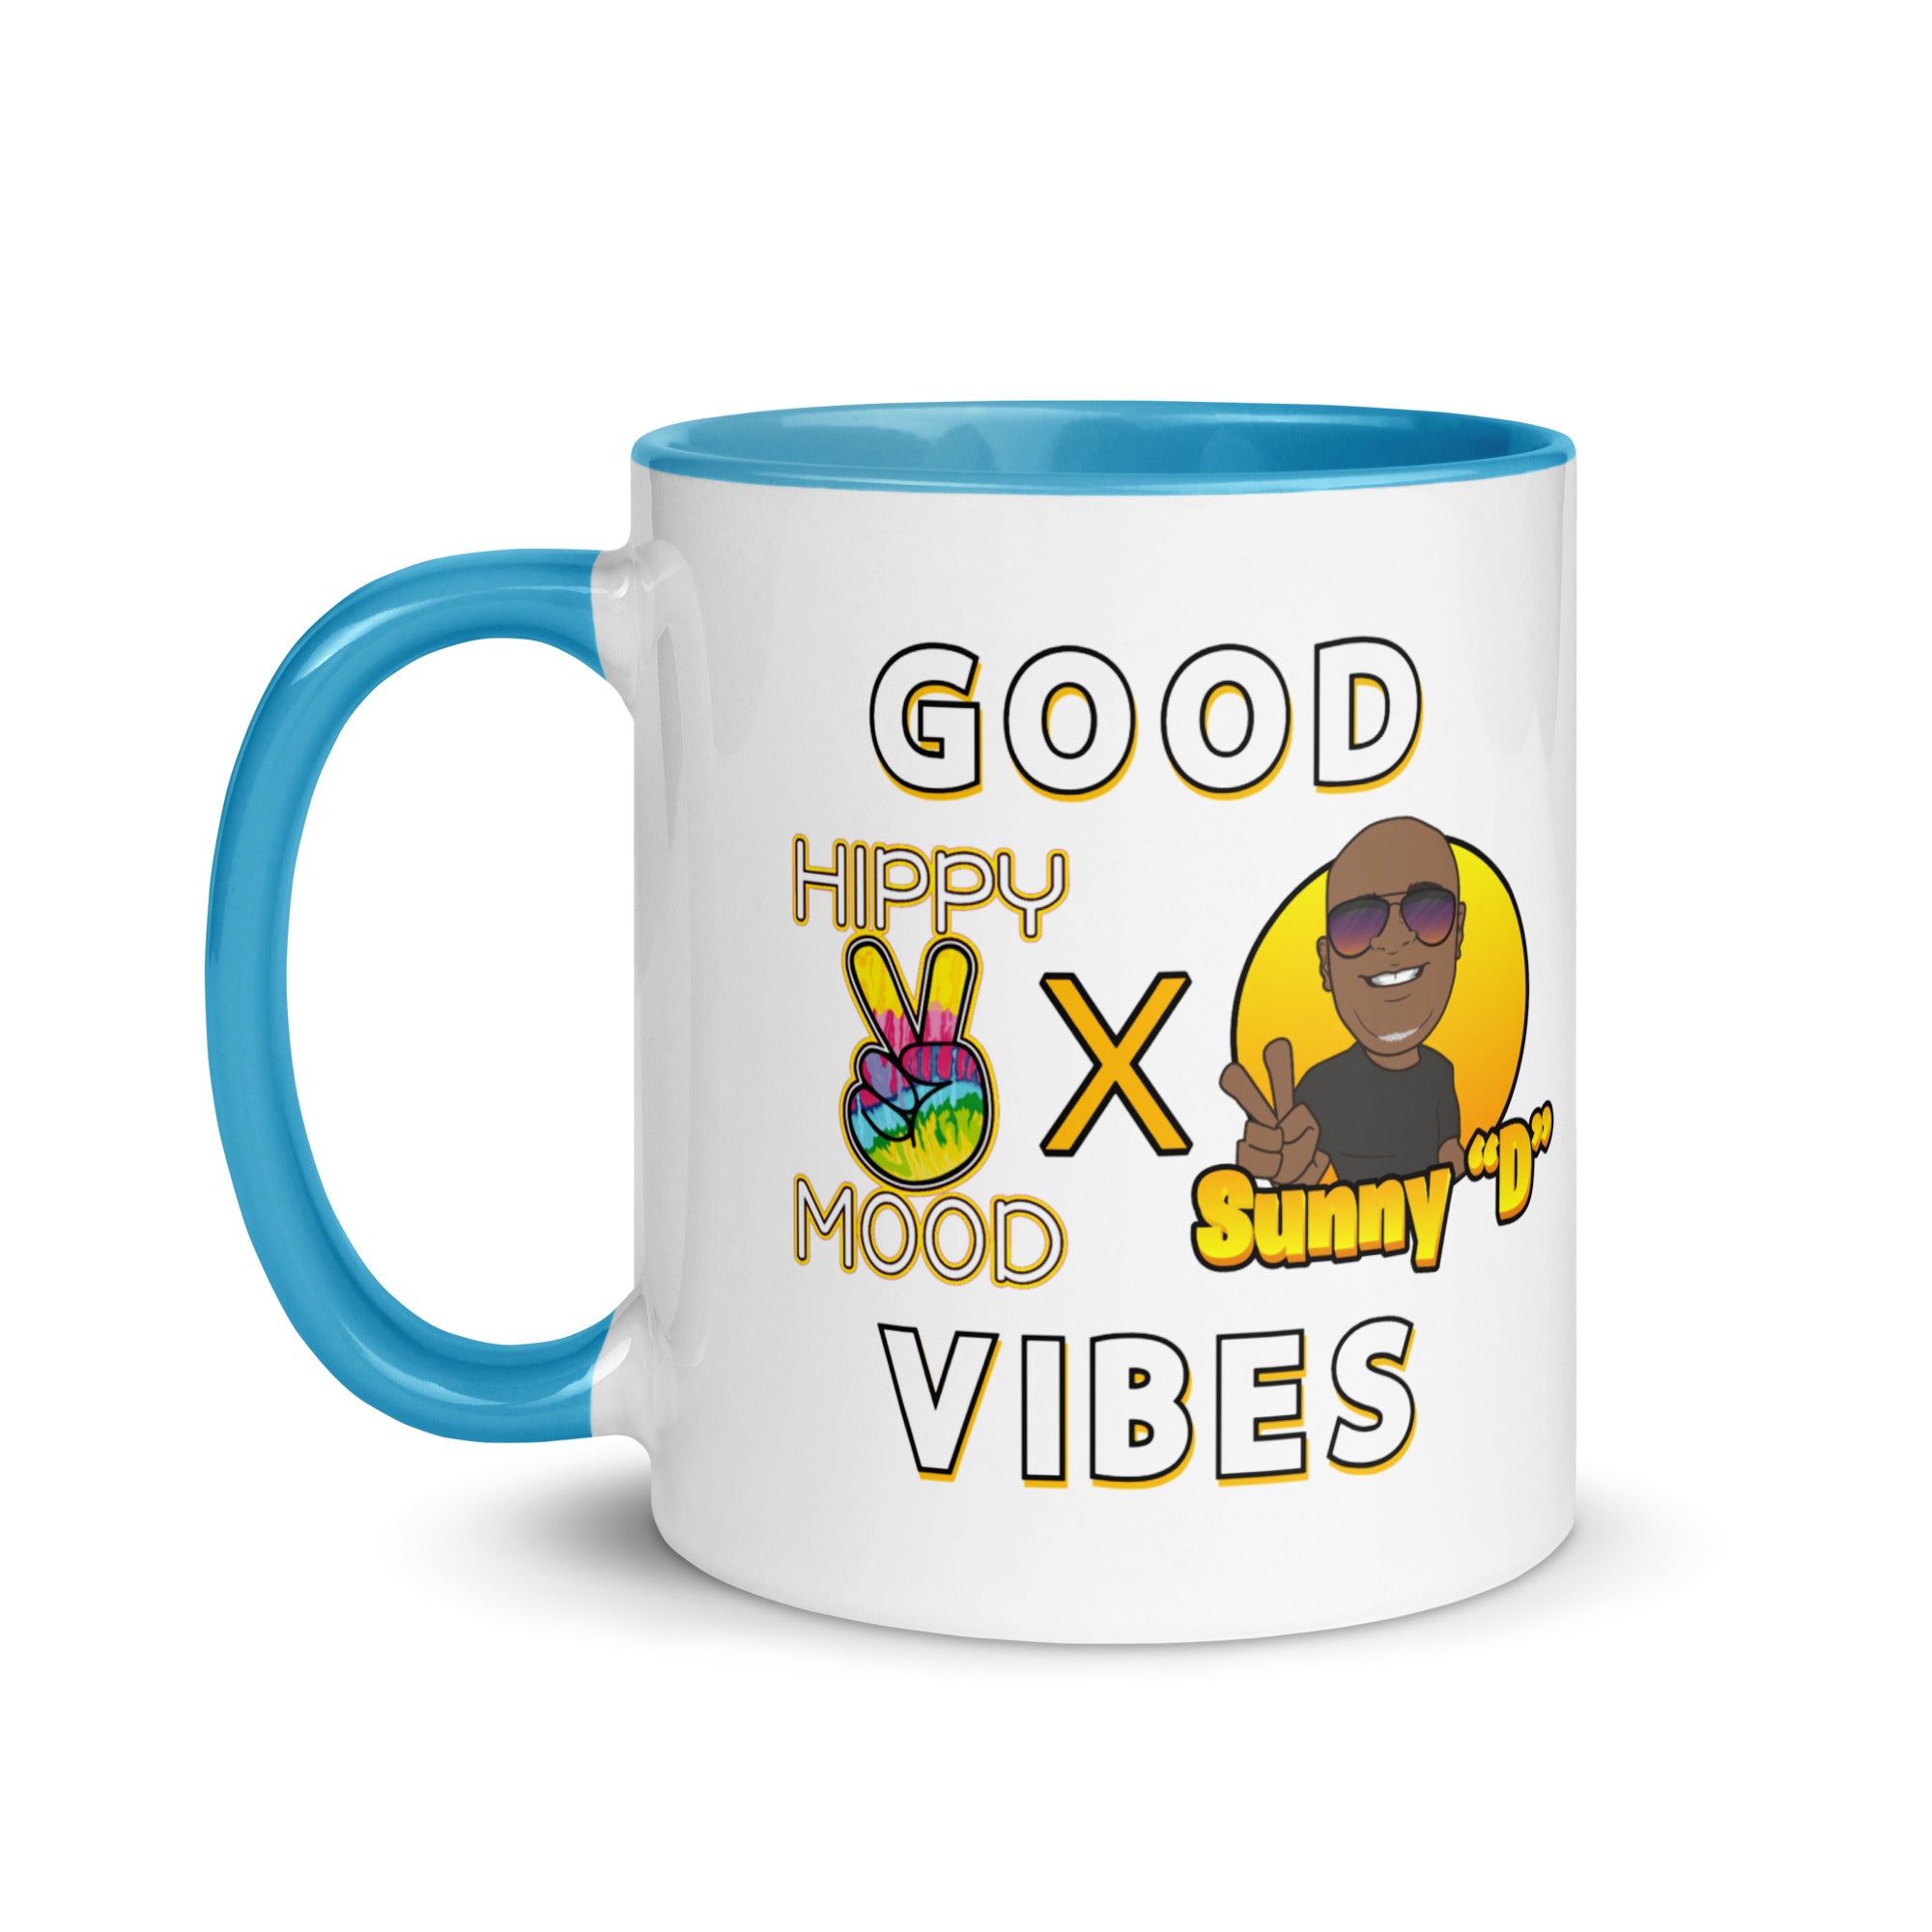 Hippy Mood x Sunny D | Good Vibes | Mug with Color Inside